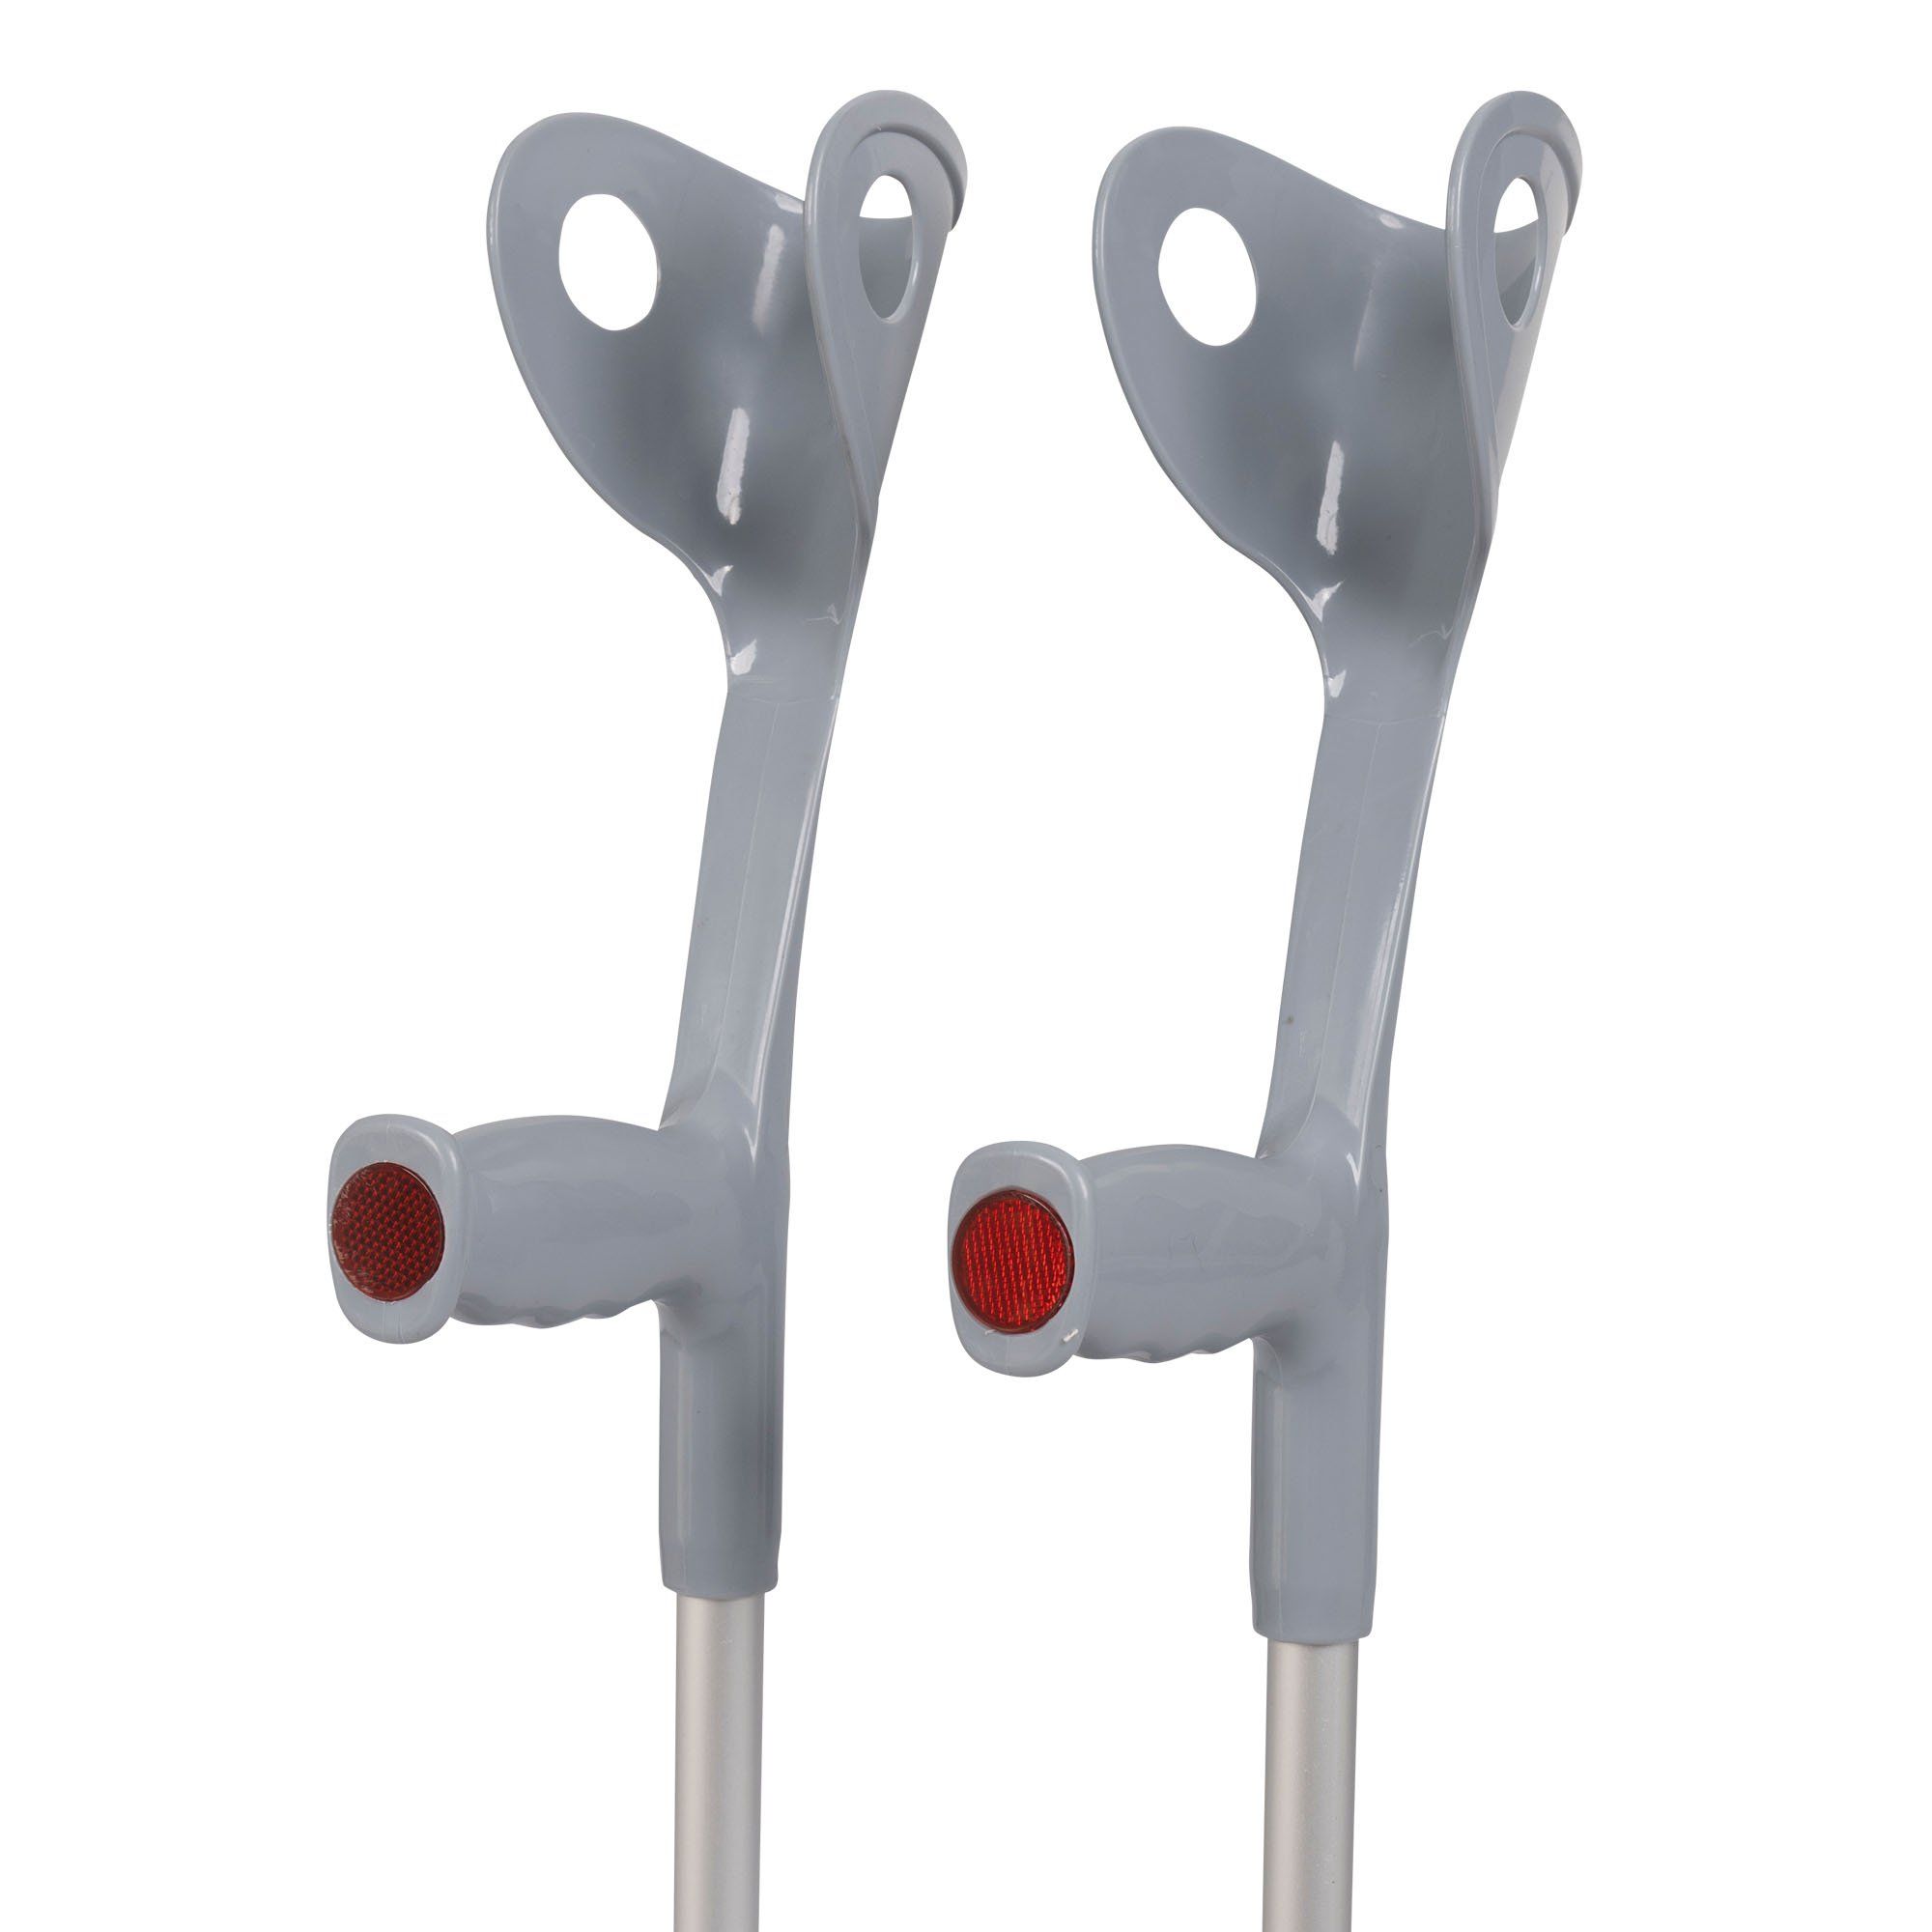 medidu premium elbow crutches per pair